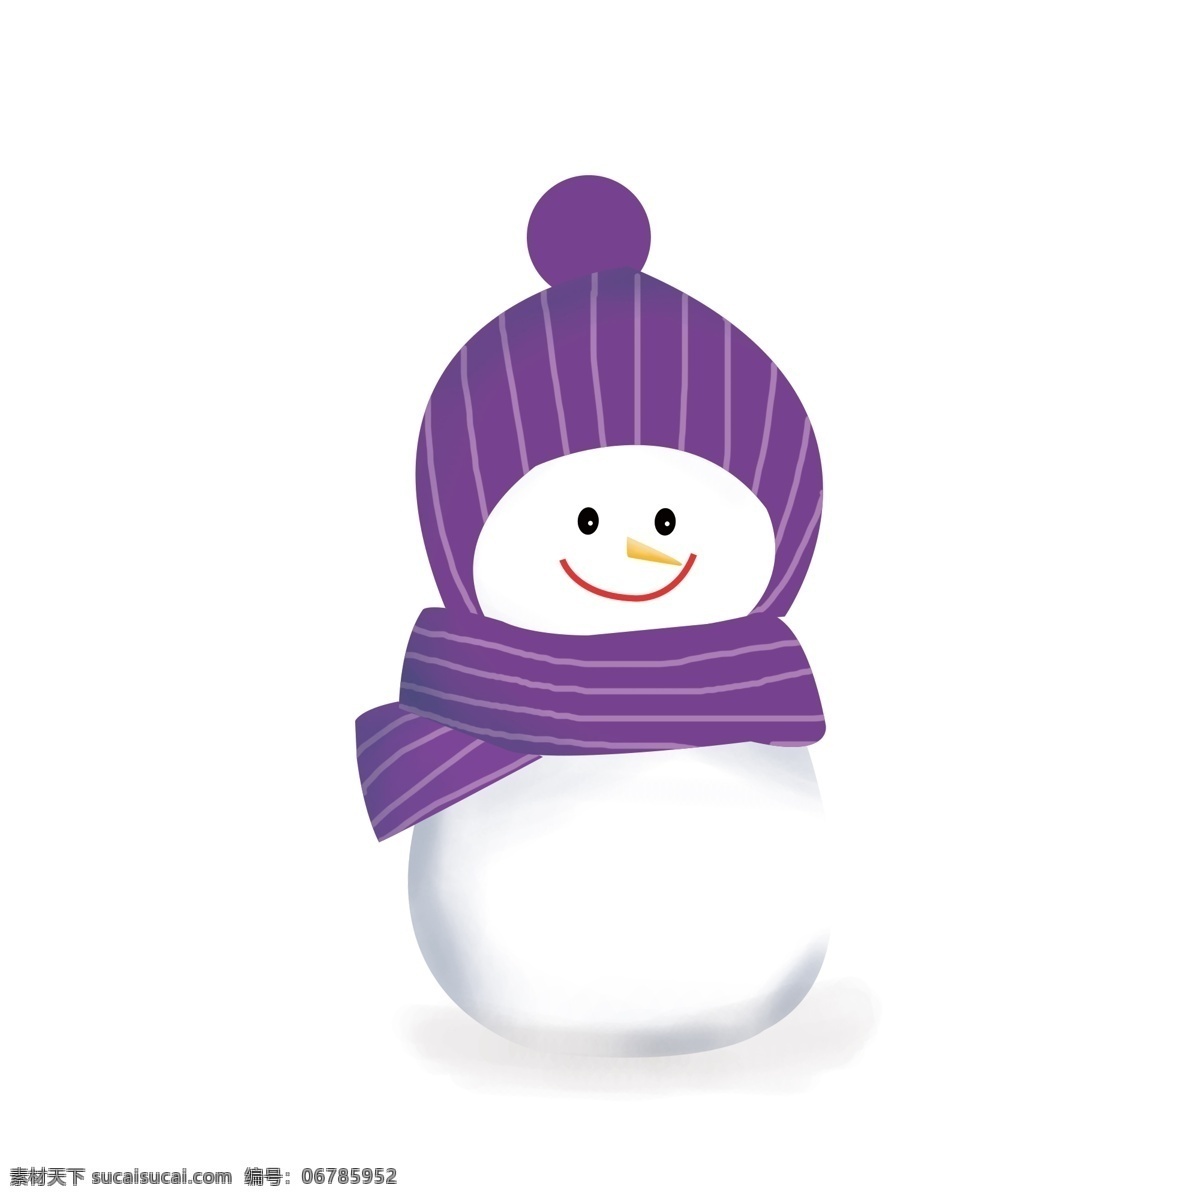 原创 手绘 戴帽子 围巾 雪人 手绘素材 冬素材 冬元素 冬 戴帽子雪人